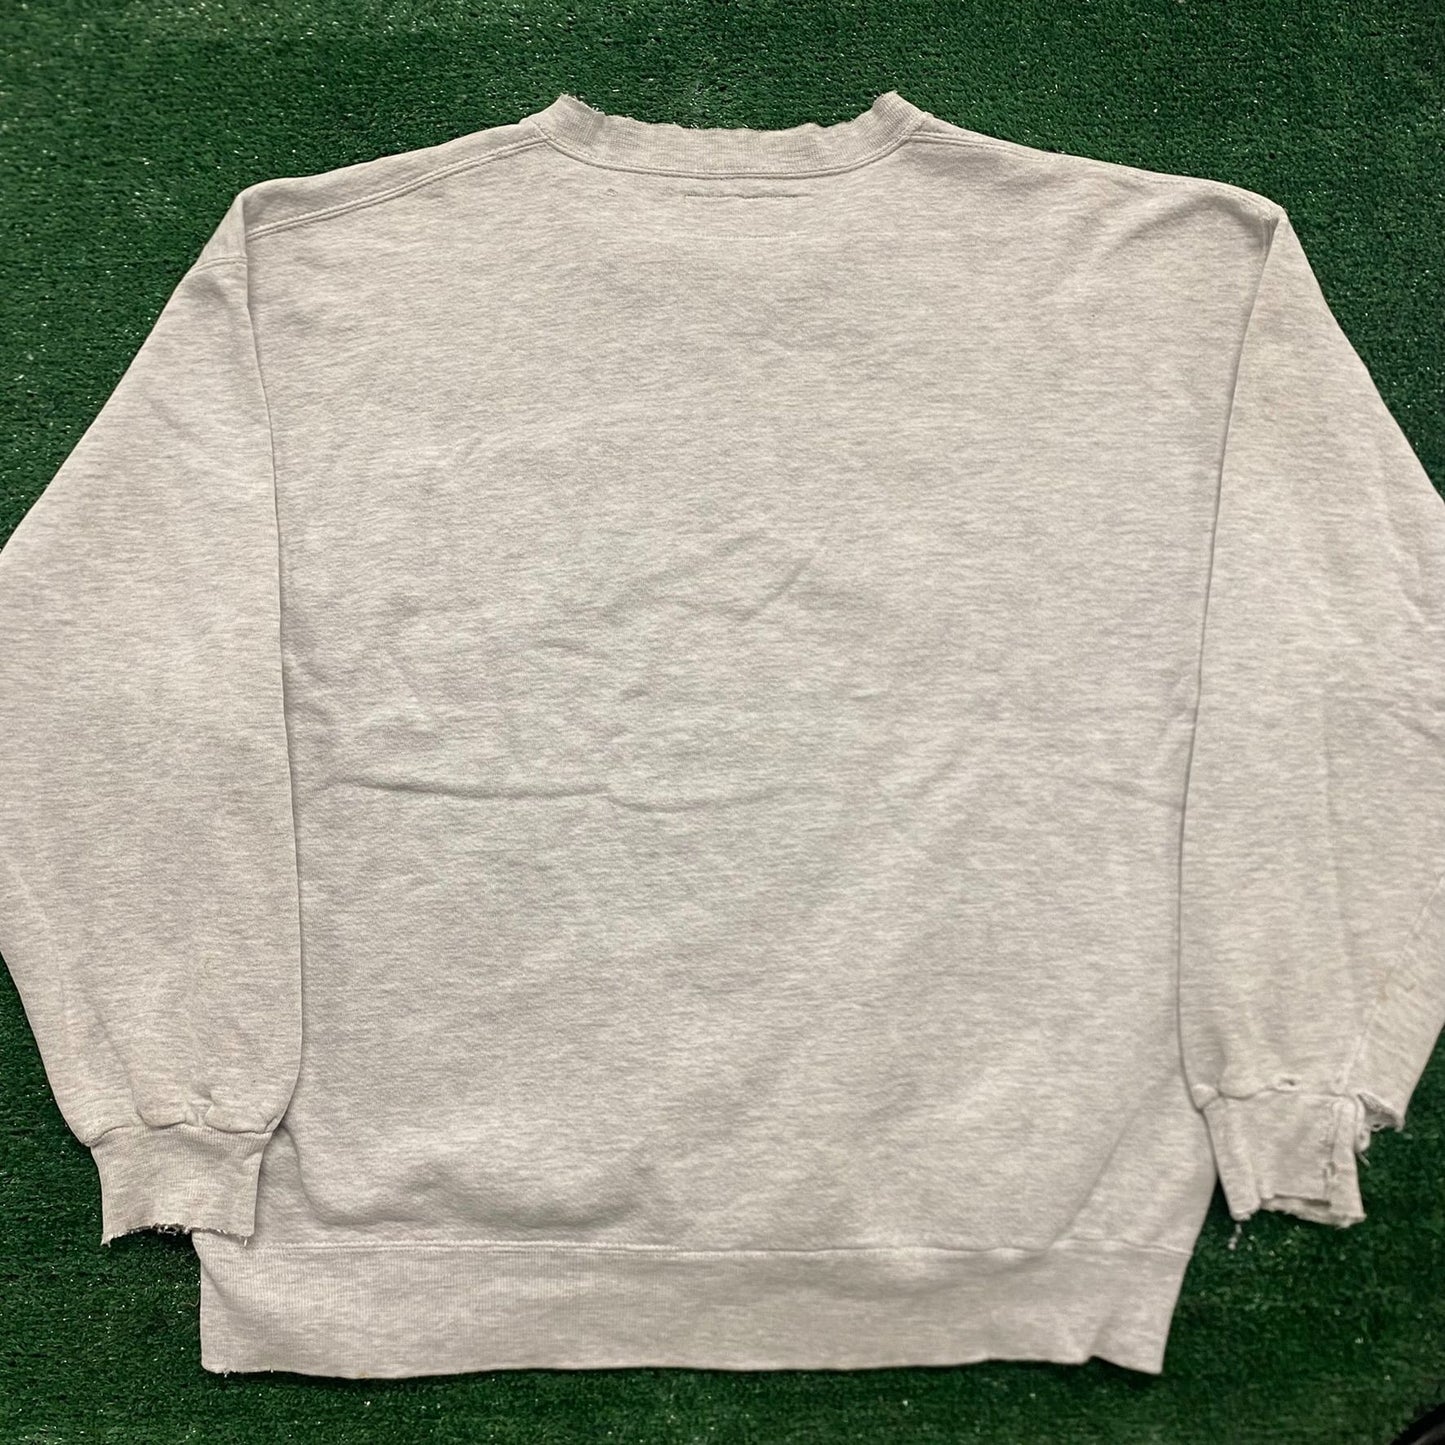 Vintage 80s Simpson College Thrashed Crewneck Sweatshirt